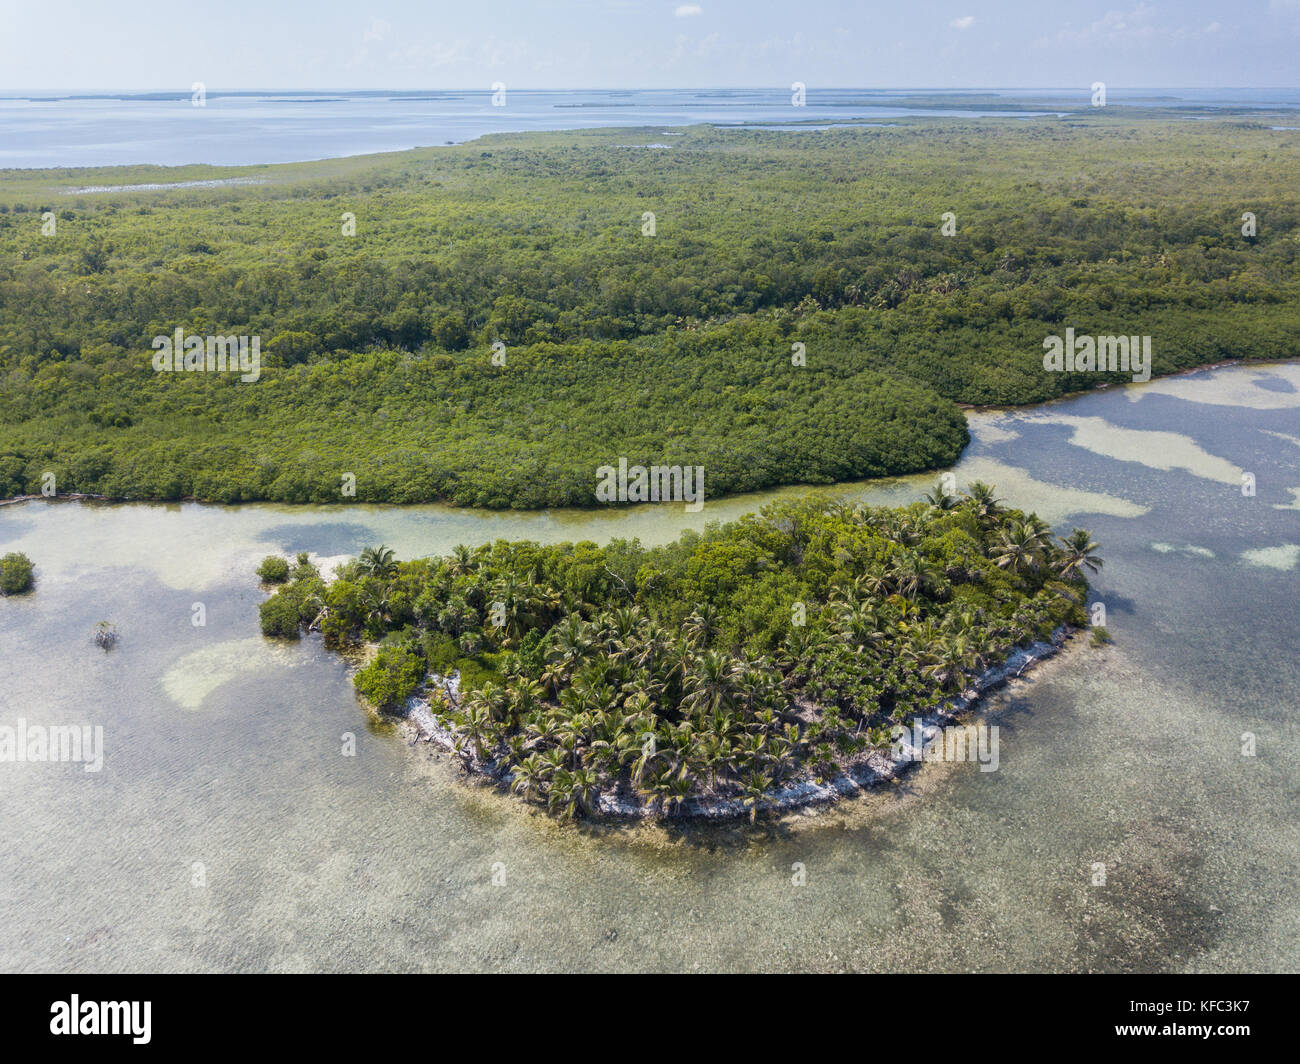 Eine Luftaufnahme von einer schönen Insel am Rande des turneffe Atoll vor der Küste von Belize. Dieses Gebiet der Karibik ist äußerst artenreichen. Stockfoto